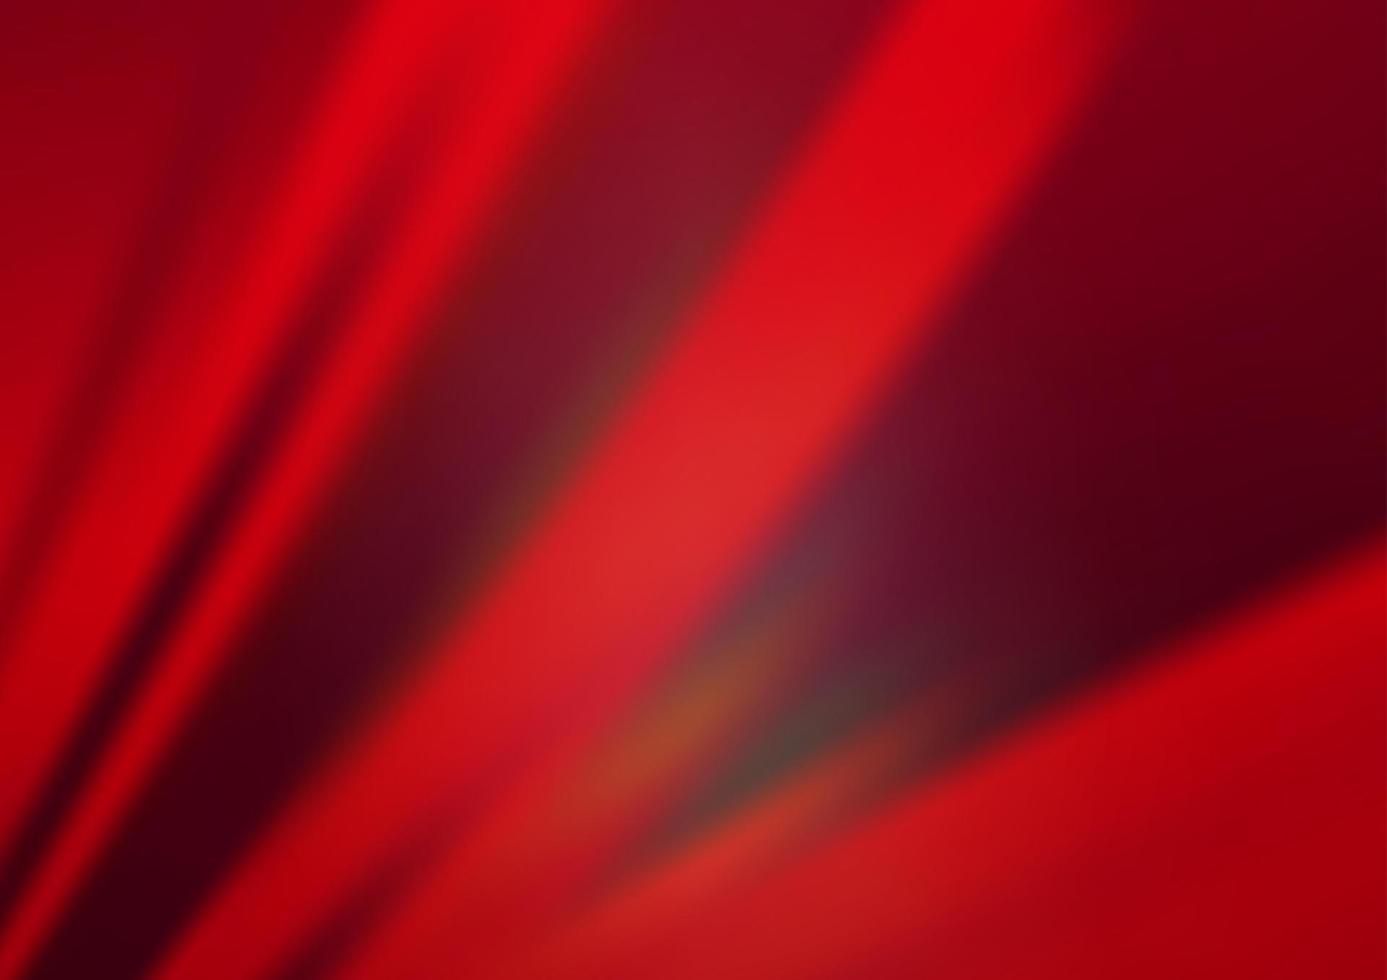 ljus röd vektor bakgrund med raka linjer.